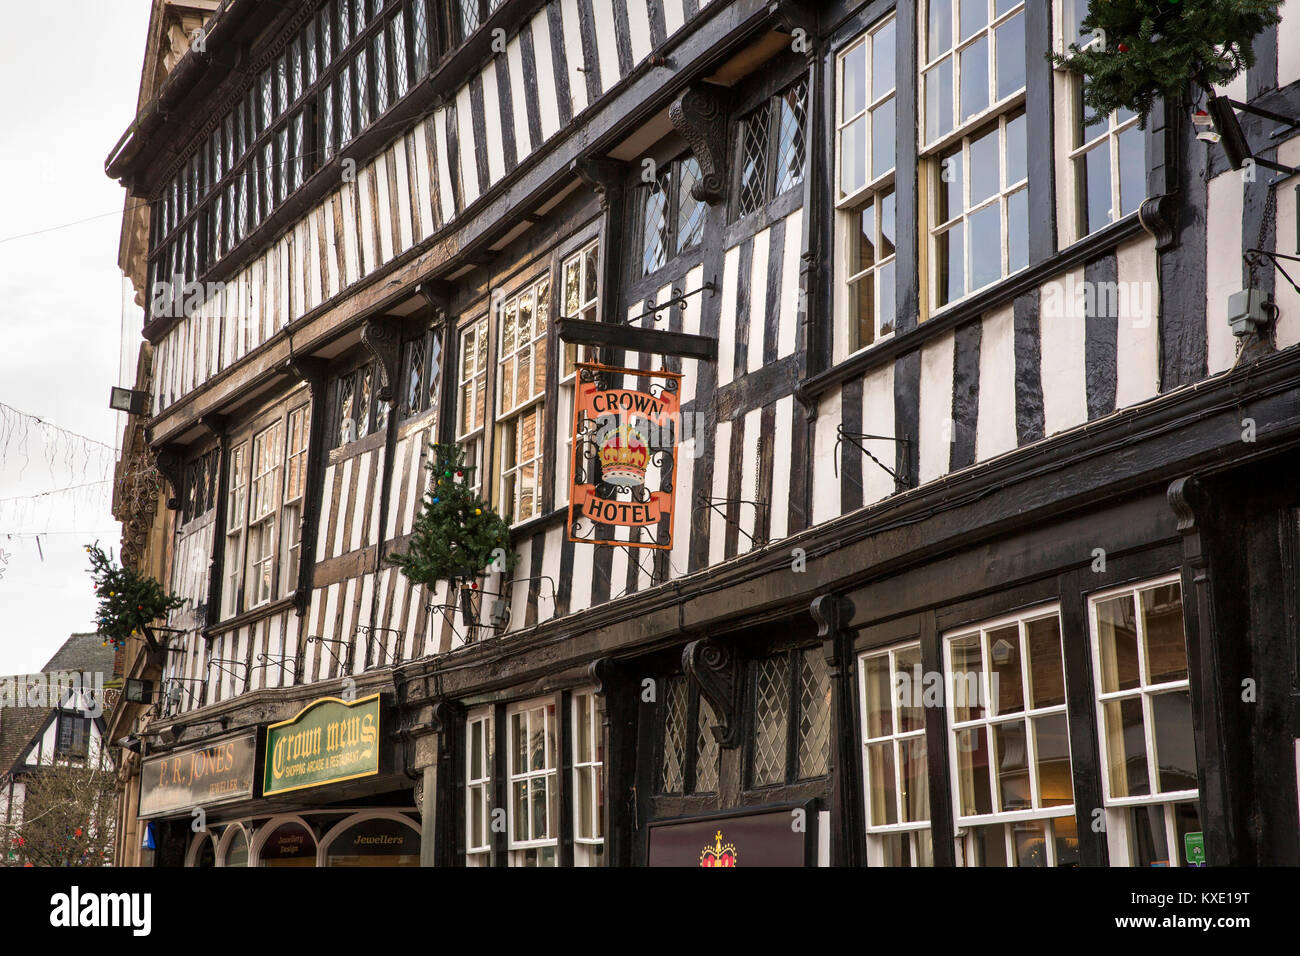 Regno Unito, Inghilterra, Cheshire, Nantwich, High Street, Crown Hotel, struttura in legno del 1583 public house Foto Stock